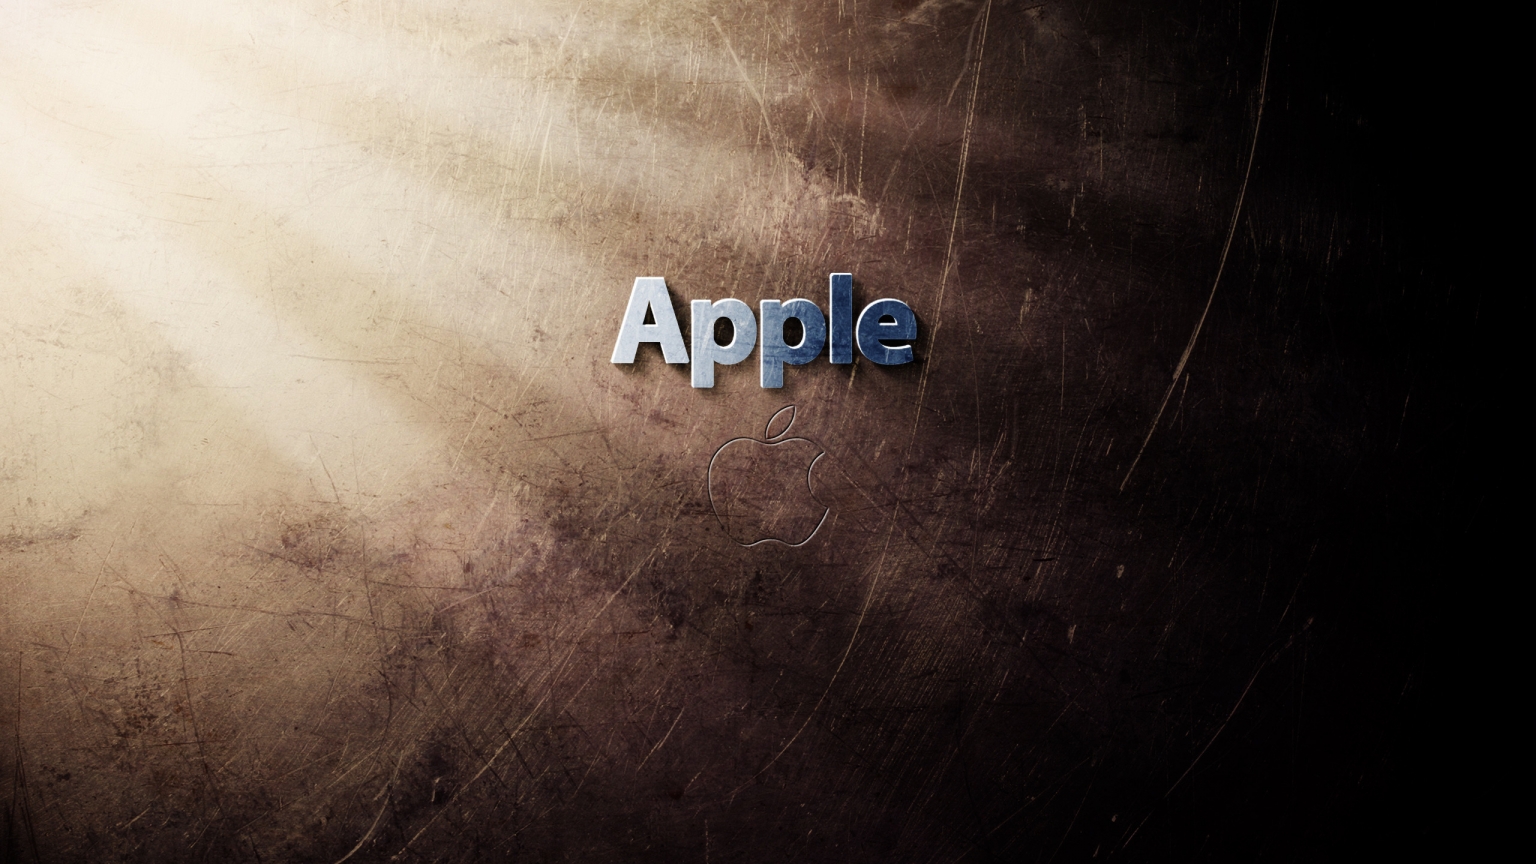 Cool Apple Logo for 1536 x 864 HDTV resolution